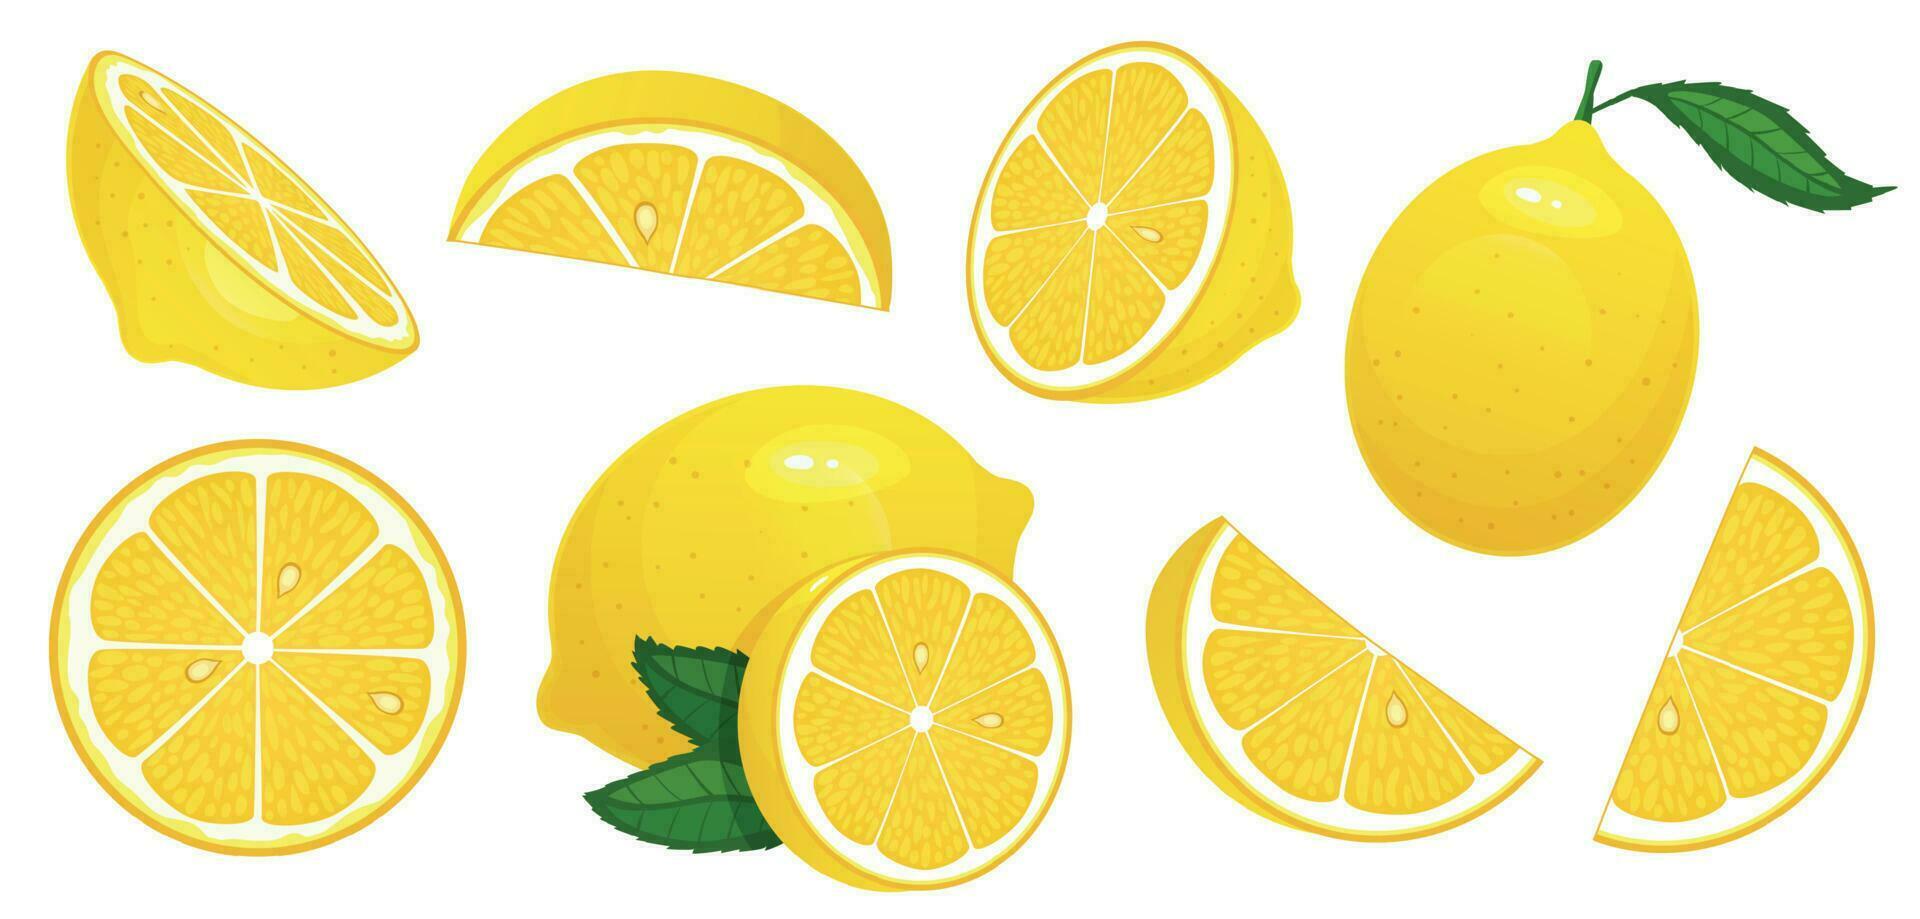 Lemon slices. Fresh citrus, half sliced lemons and chopped lemon isolated cartoon vector illustration set